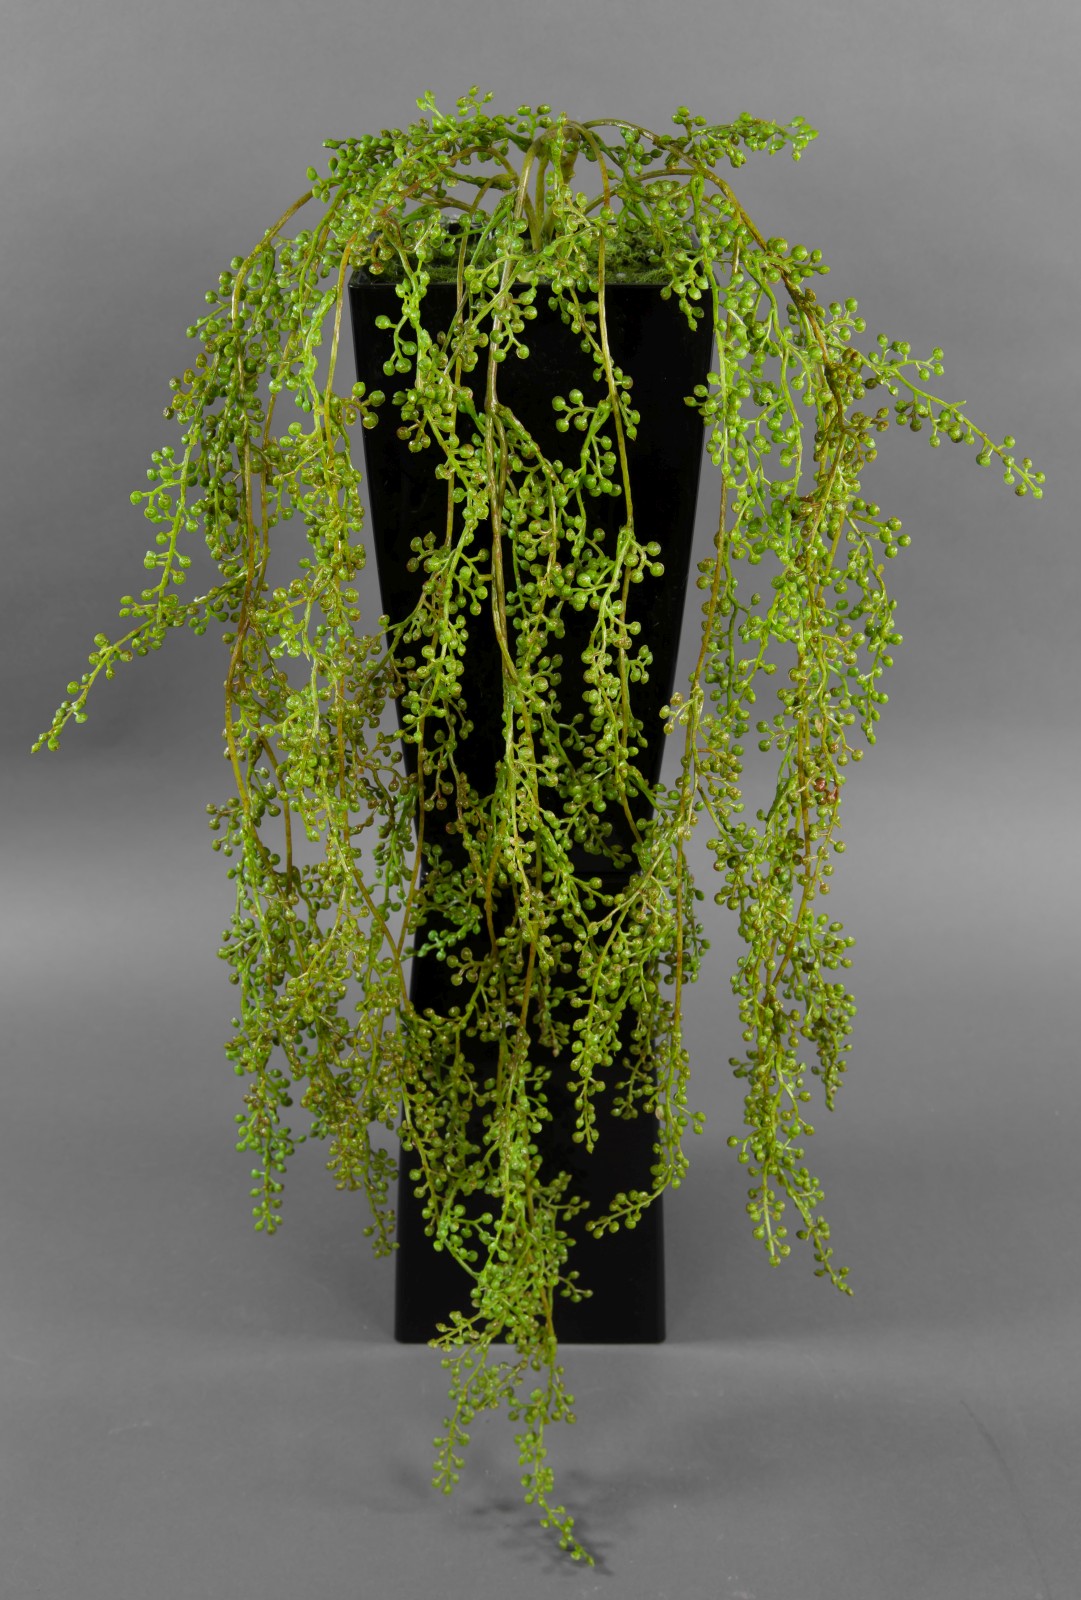 Sedumranke 70cm CG künstliche Pflanzen Ranken Kunstrpflanzen